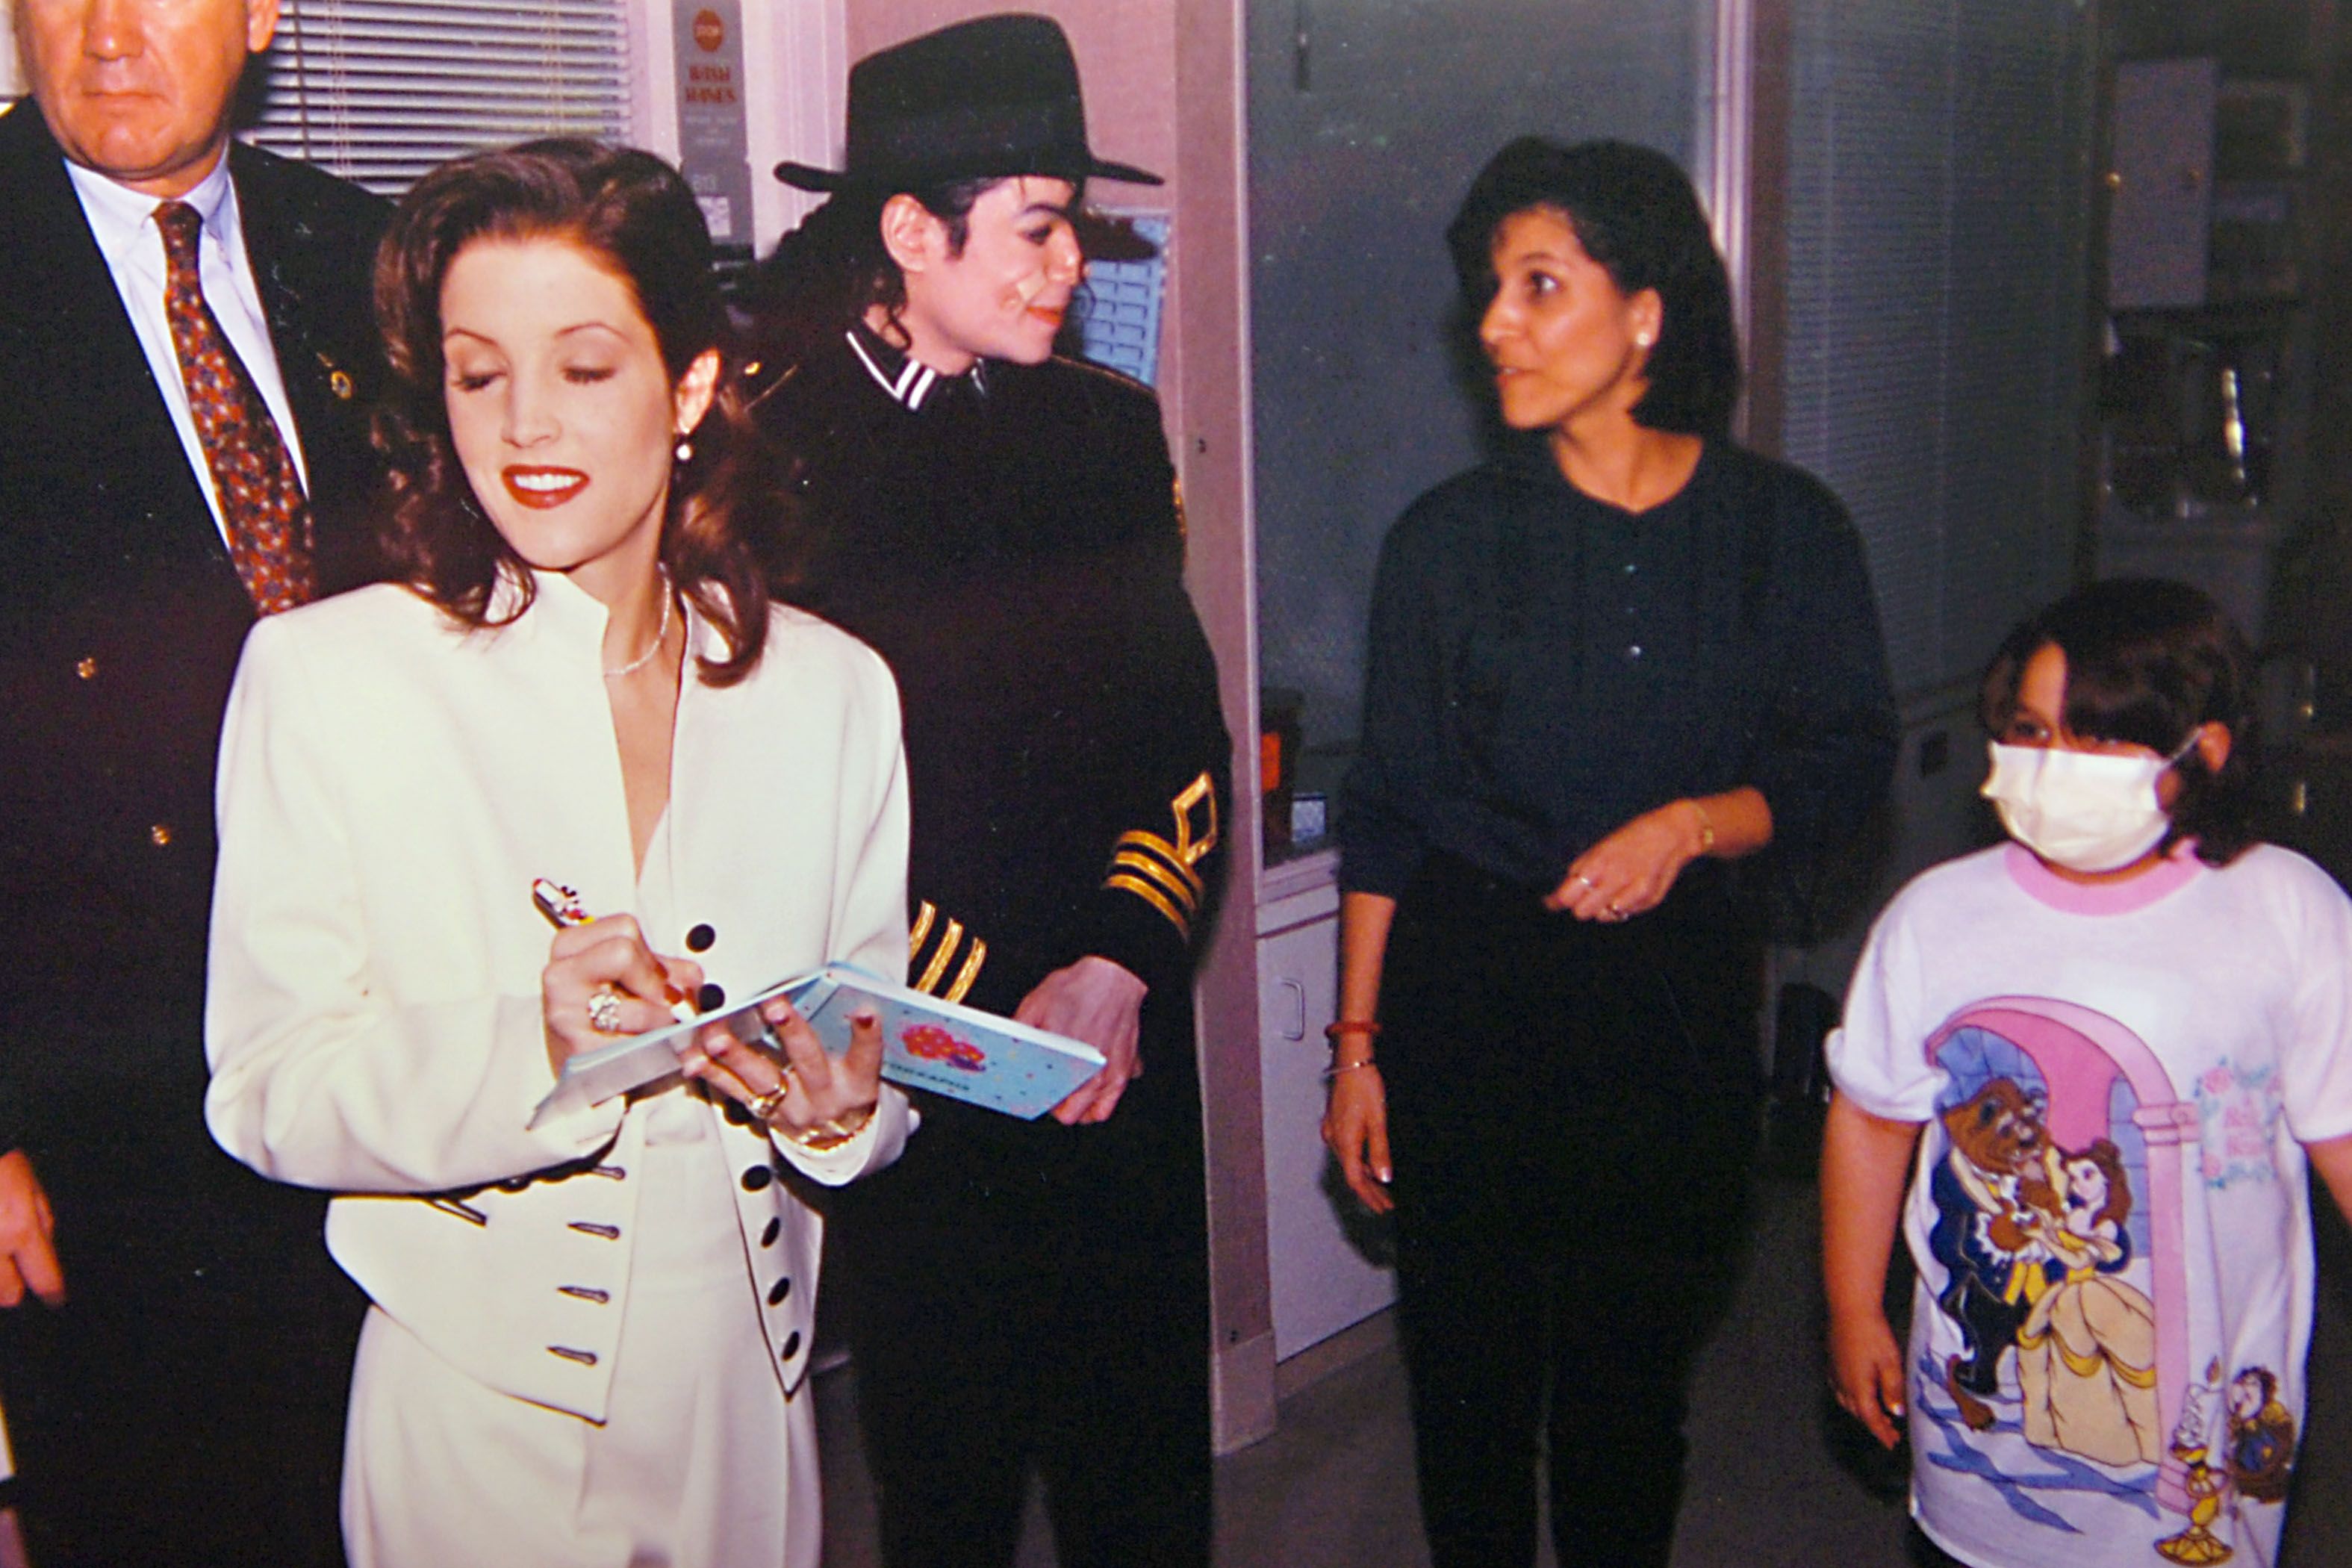 Michael Jackson and Lisa Marie presley